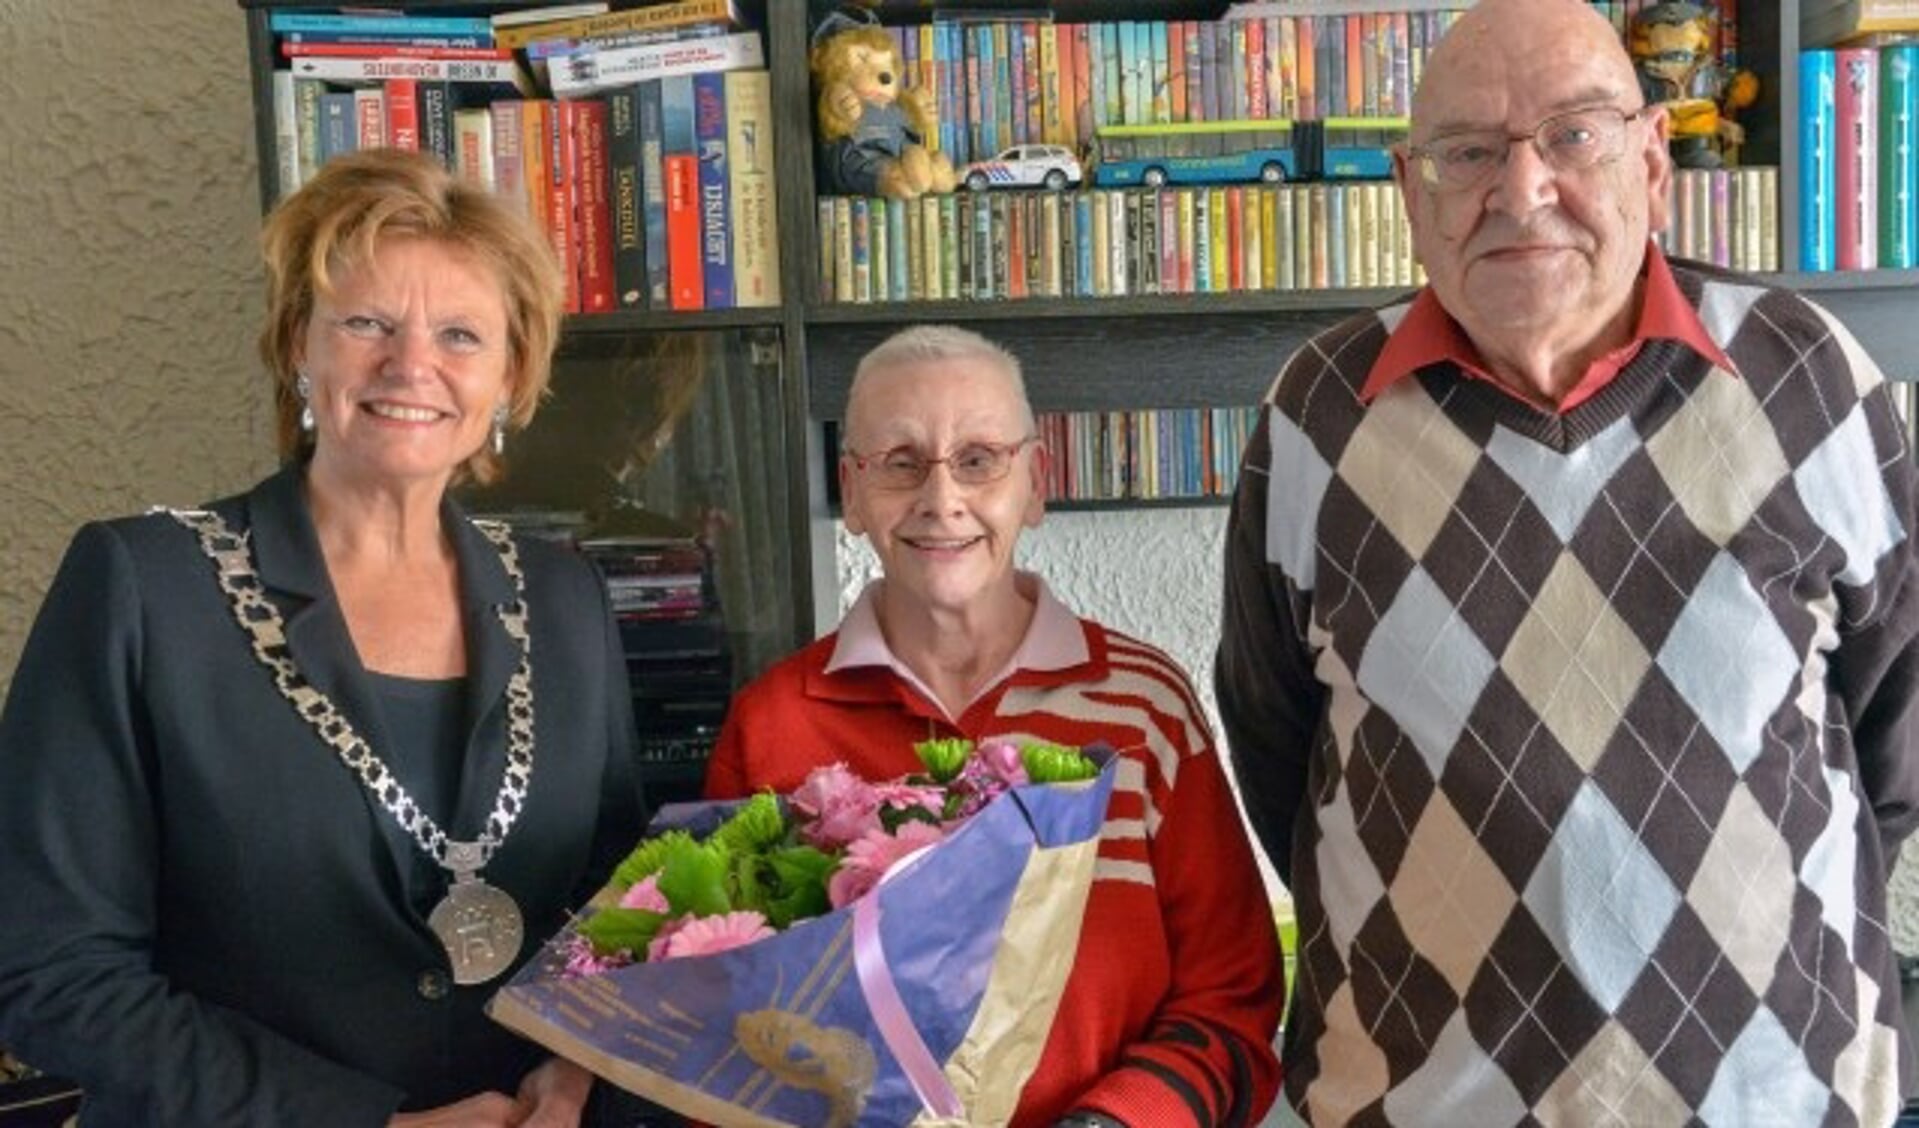 Peter en Ineke Frankhuisen kregen maandag bezoek van burgemeester Petra van Hartskamp, die het paar kwam feliciteren met hun 50-jarig huwelijk. (Foto: Paul van den Dungen)